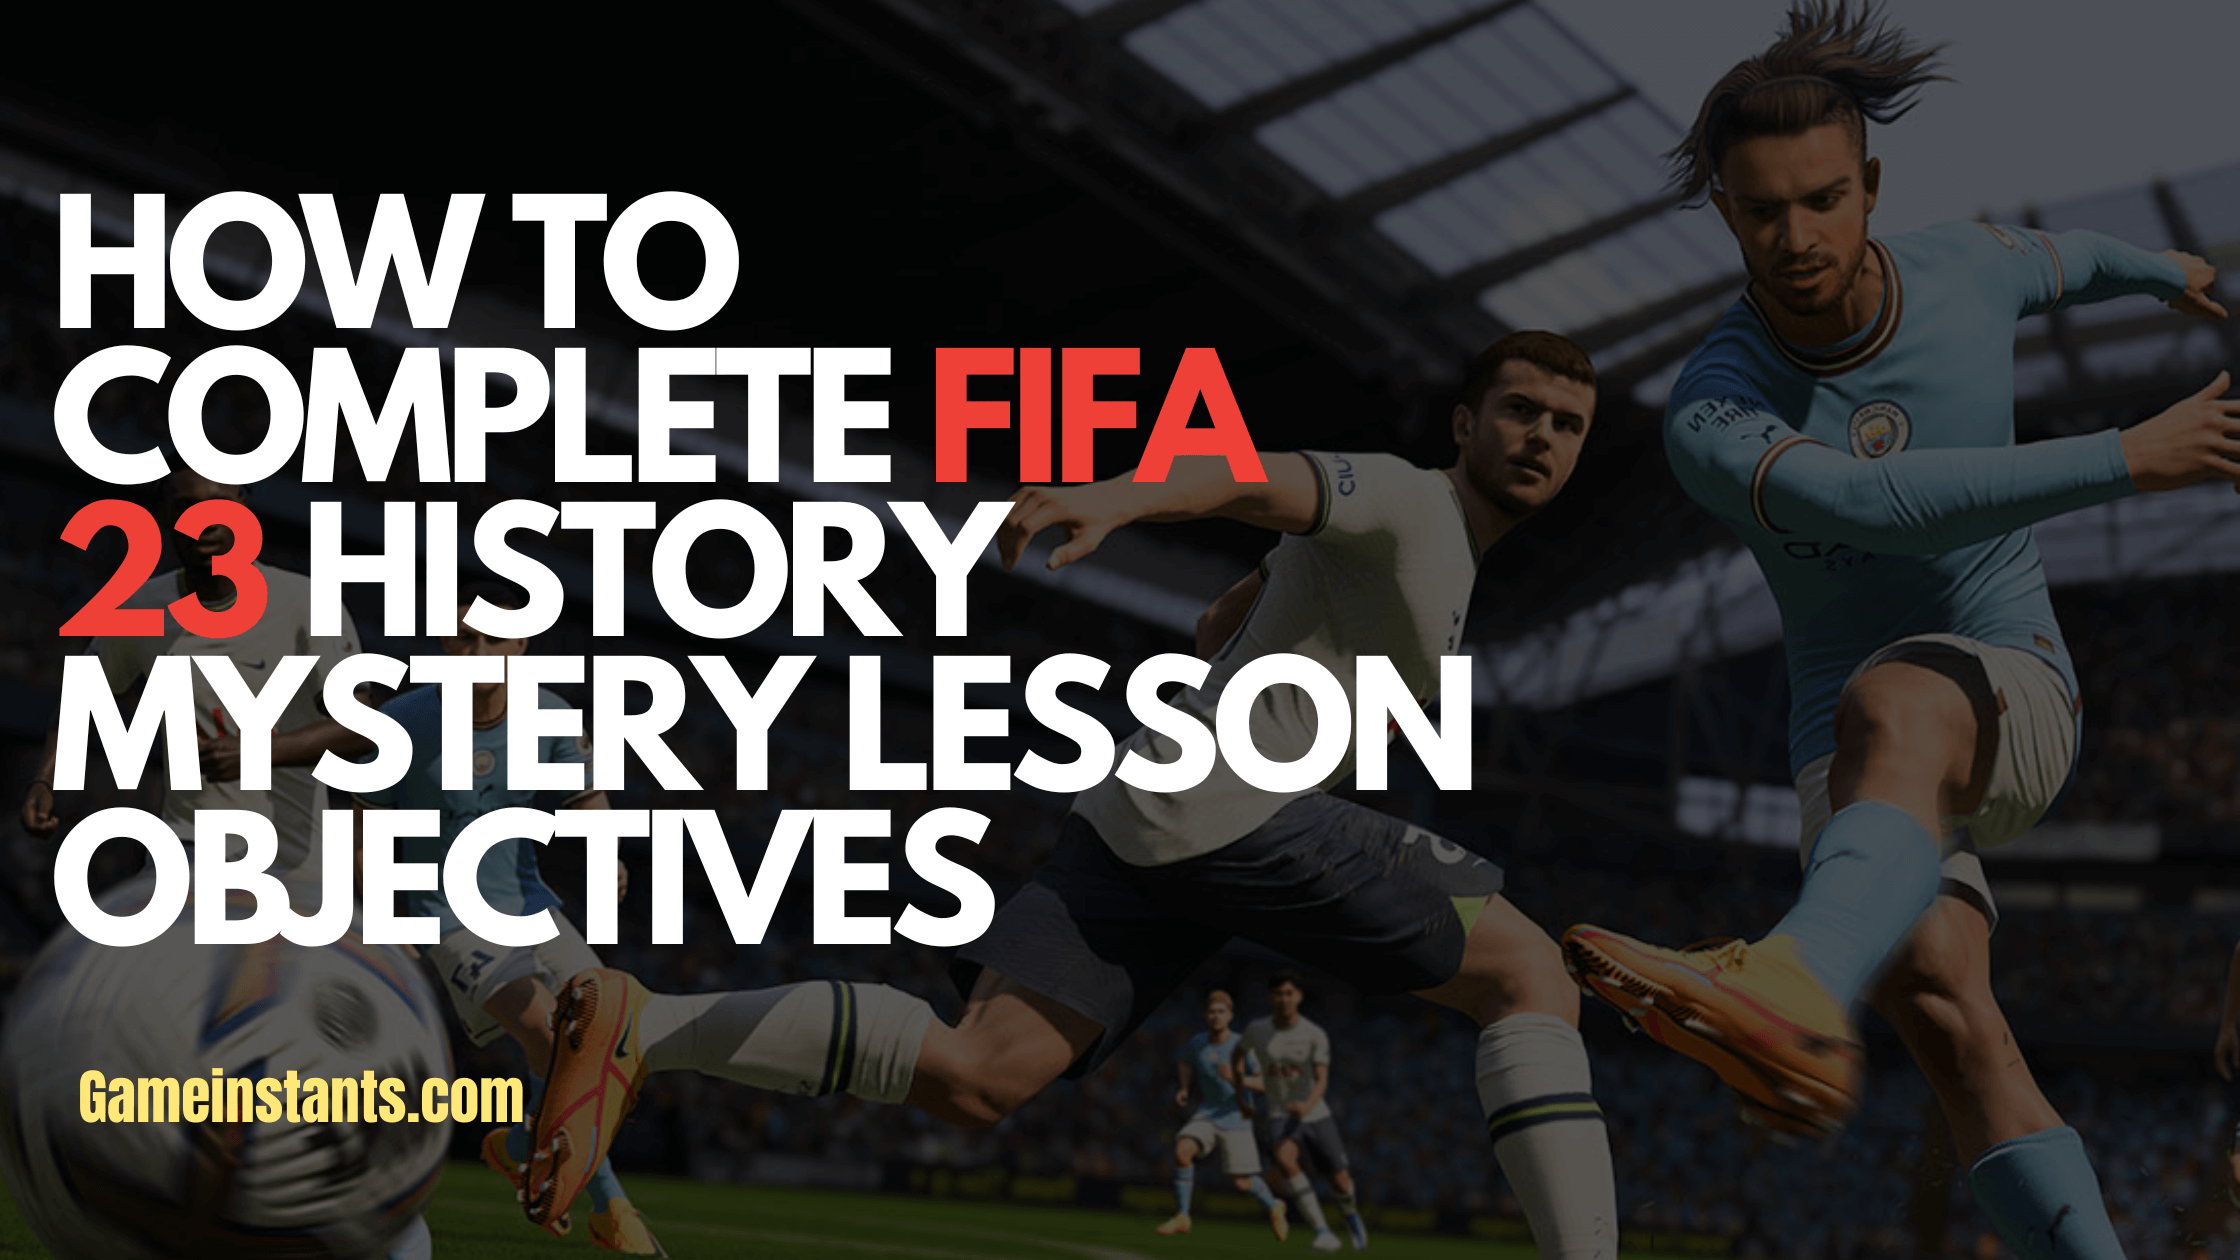 FIFA 23 History Mystery Lesson objectives